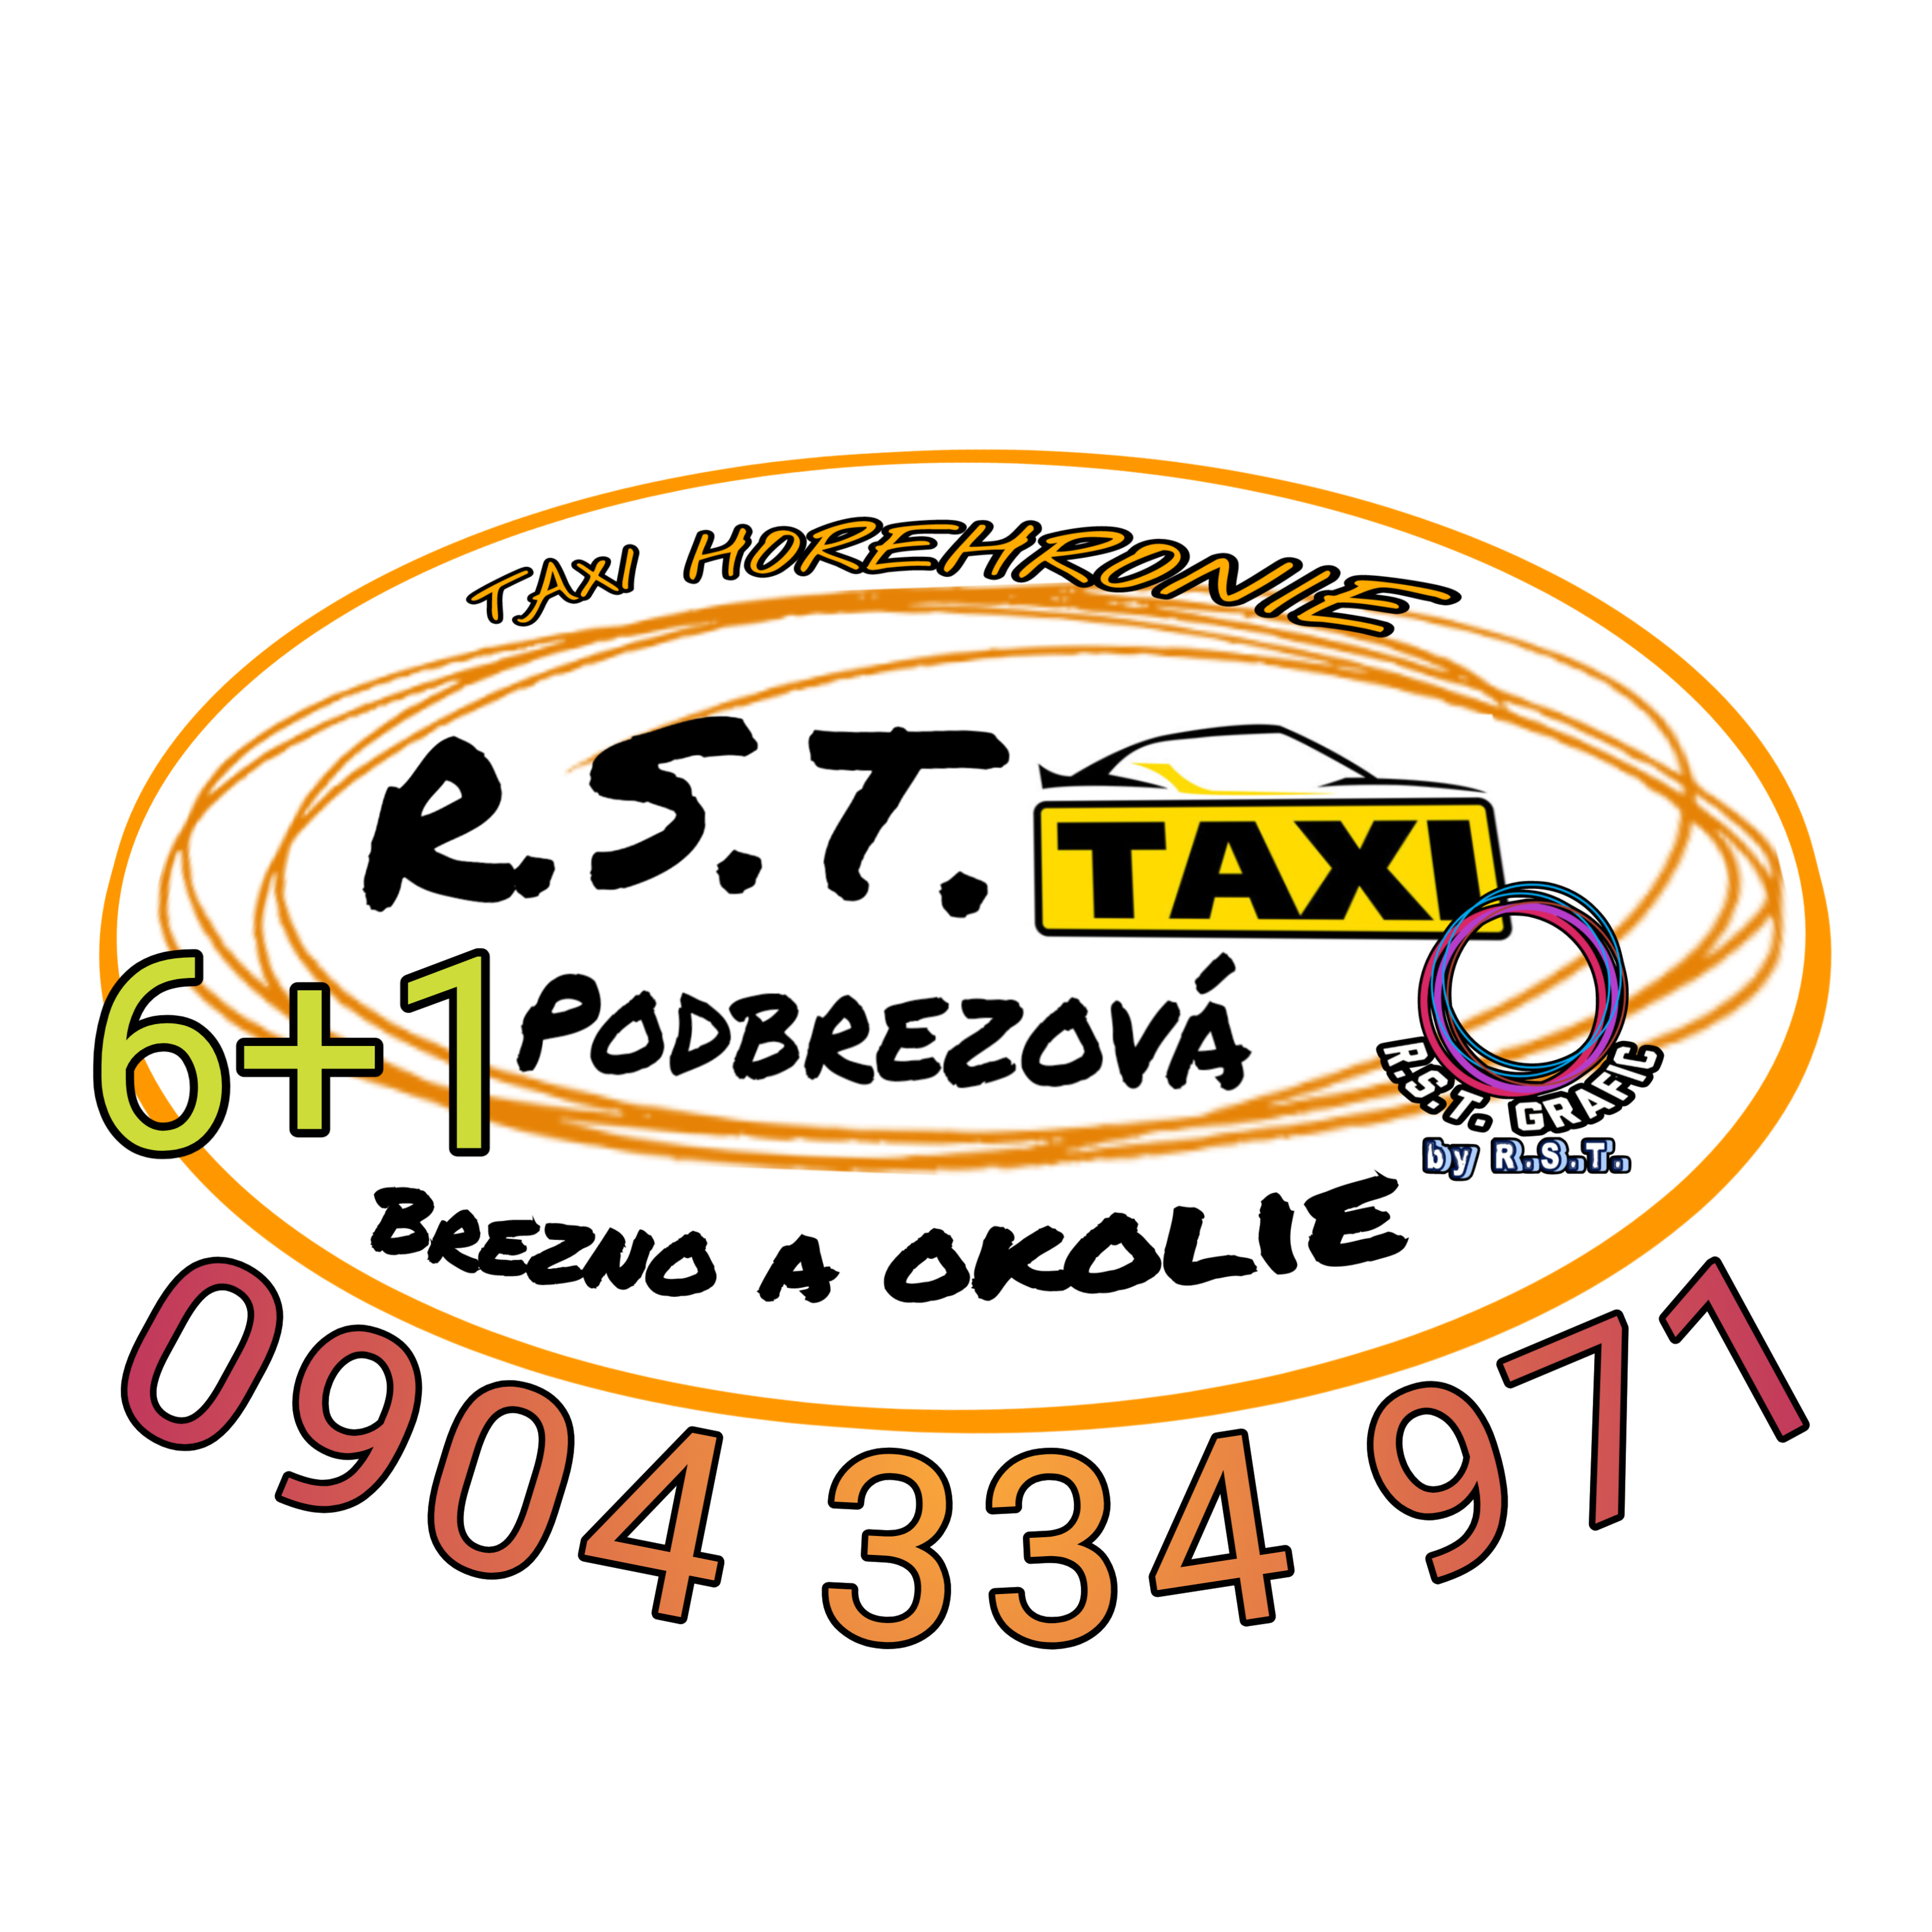 R.S.T. Taxi - Podbrezová - Brezno a okolie